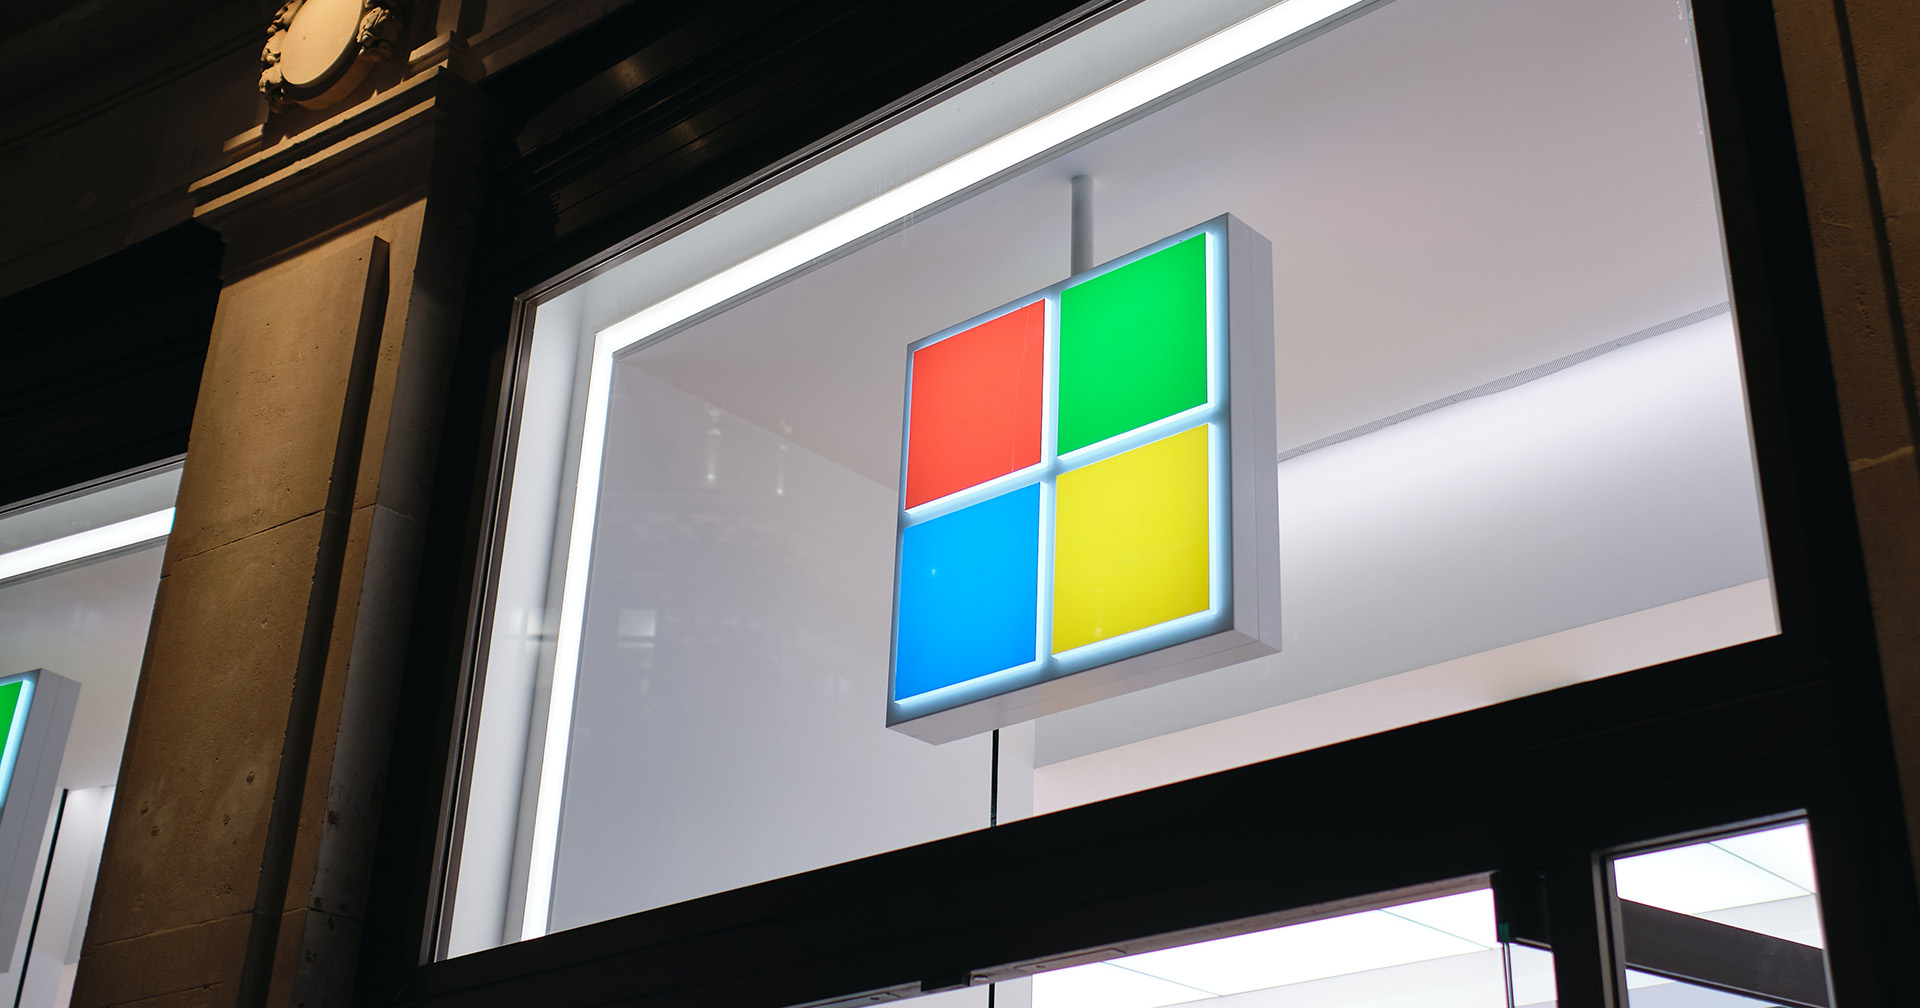 Microsoft ปิดดีลซื้อบริษัทเทคโนโลยีการพูด Nuance ไปกว่า 643,000 ล้านบาท